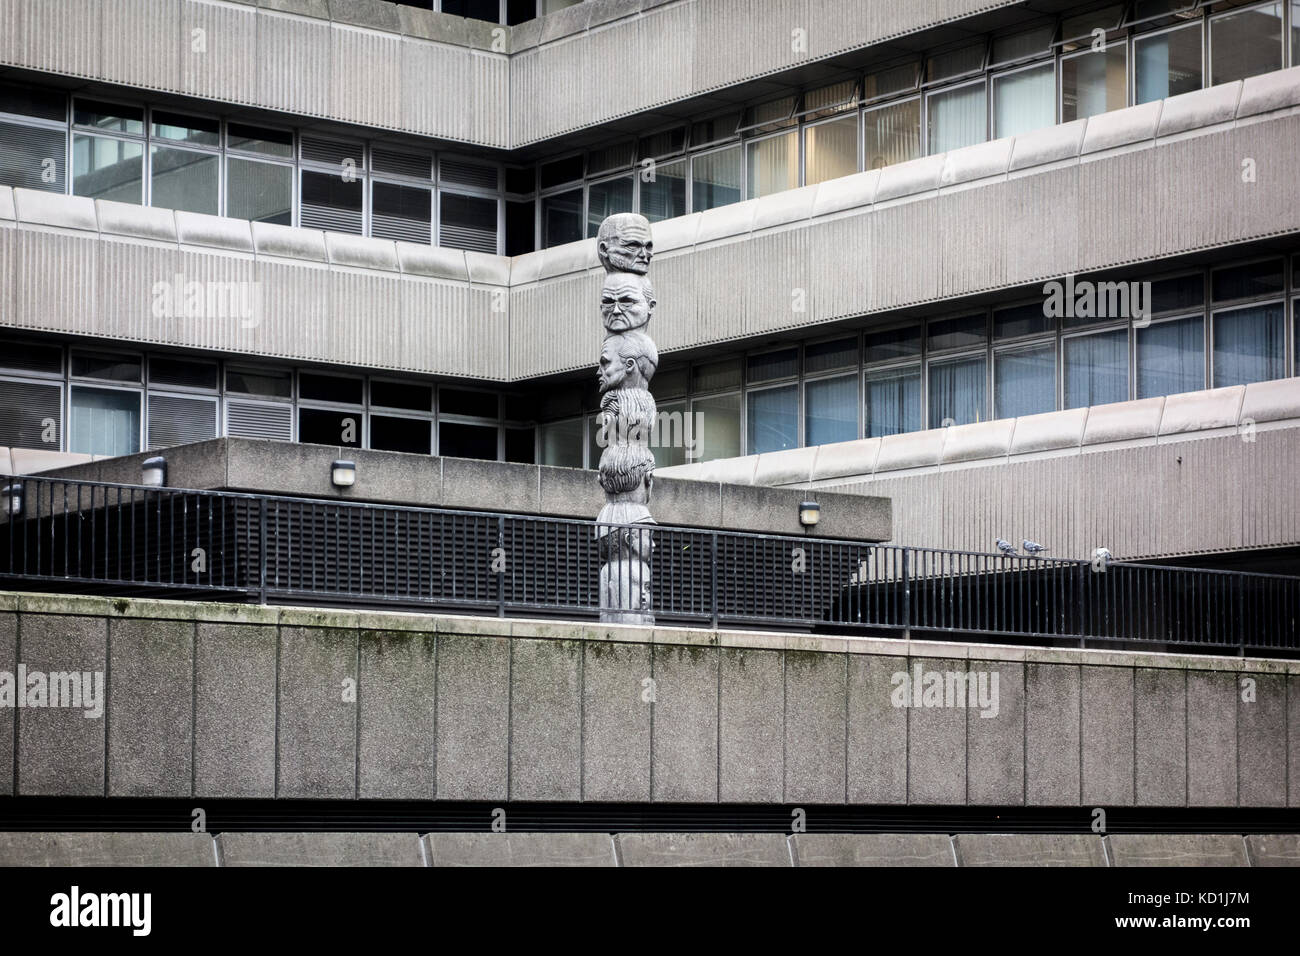 Siete edades del hombre por Richard Kindersley 1980 en Baynard brutalist House, edificio de oficinas, Londres, Reino Unido. Foto de stock